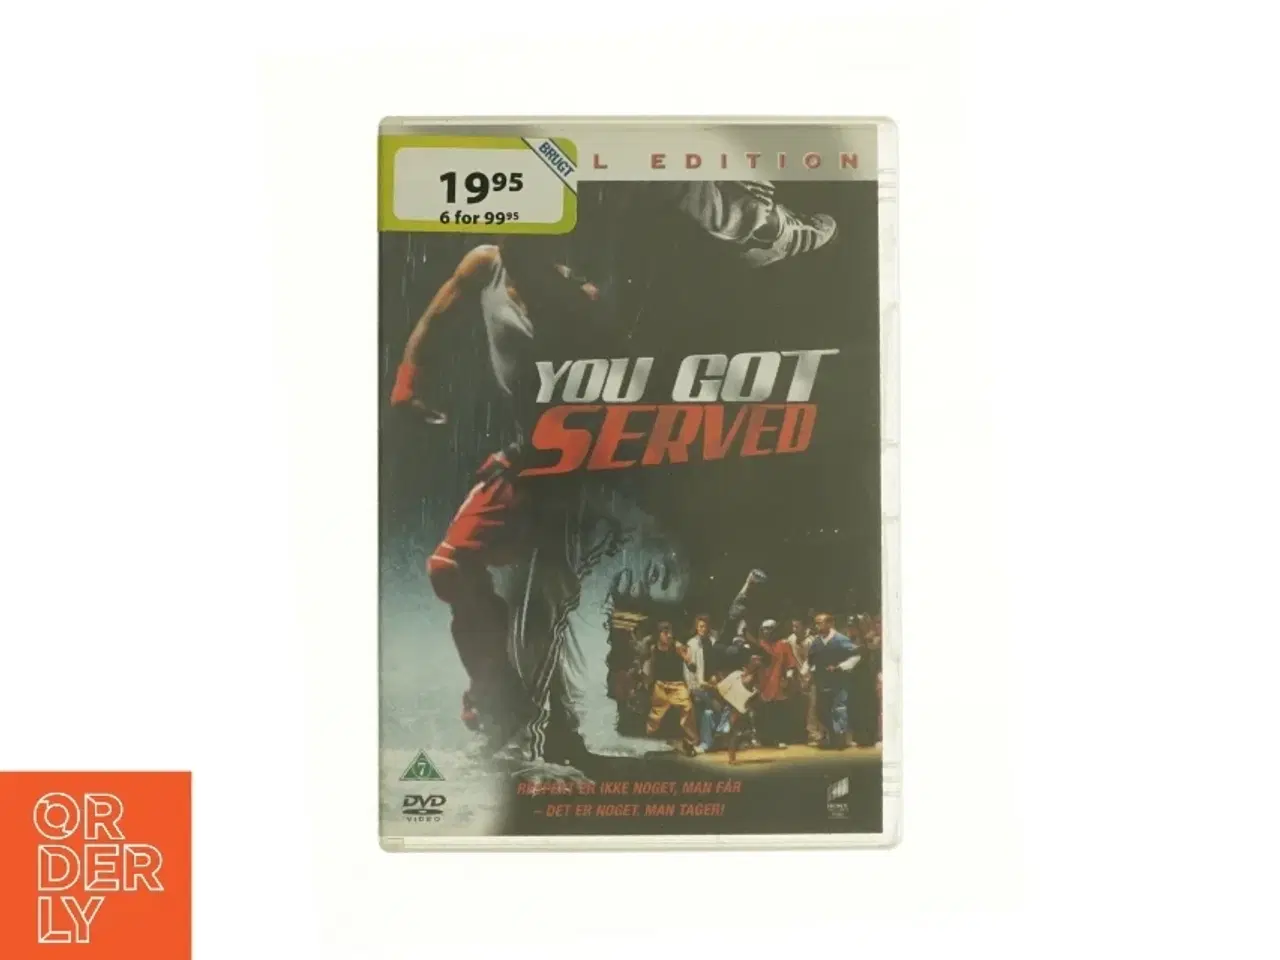 Billede 1 - You got served  fra dvd